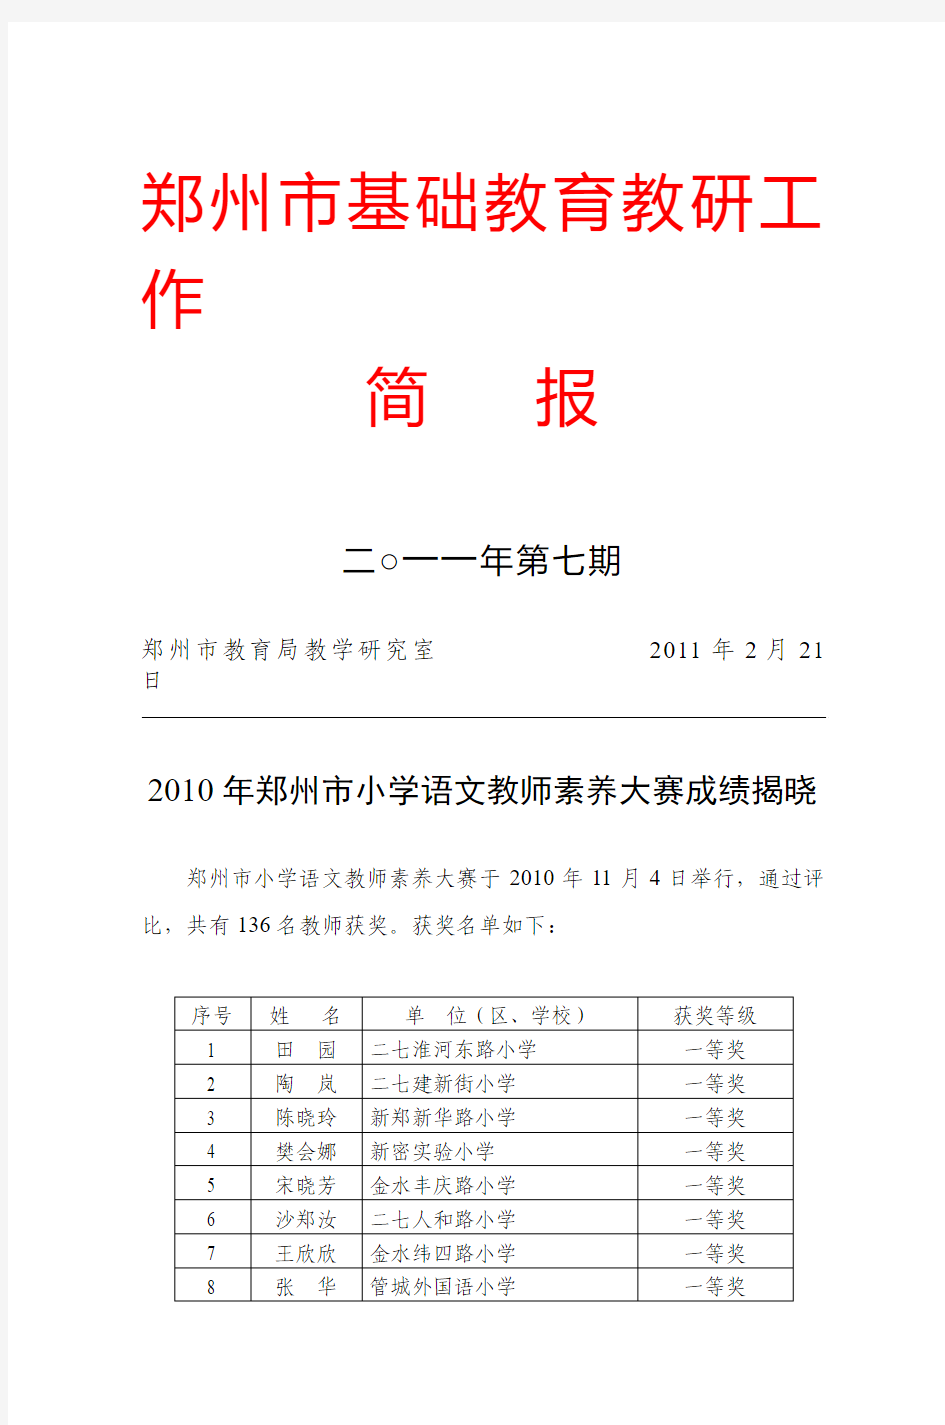 2010年郑州市小学语文教师素养大赛成绩揭晓